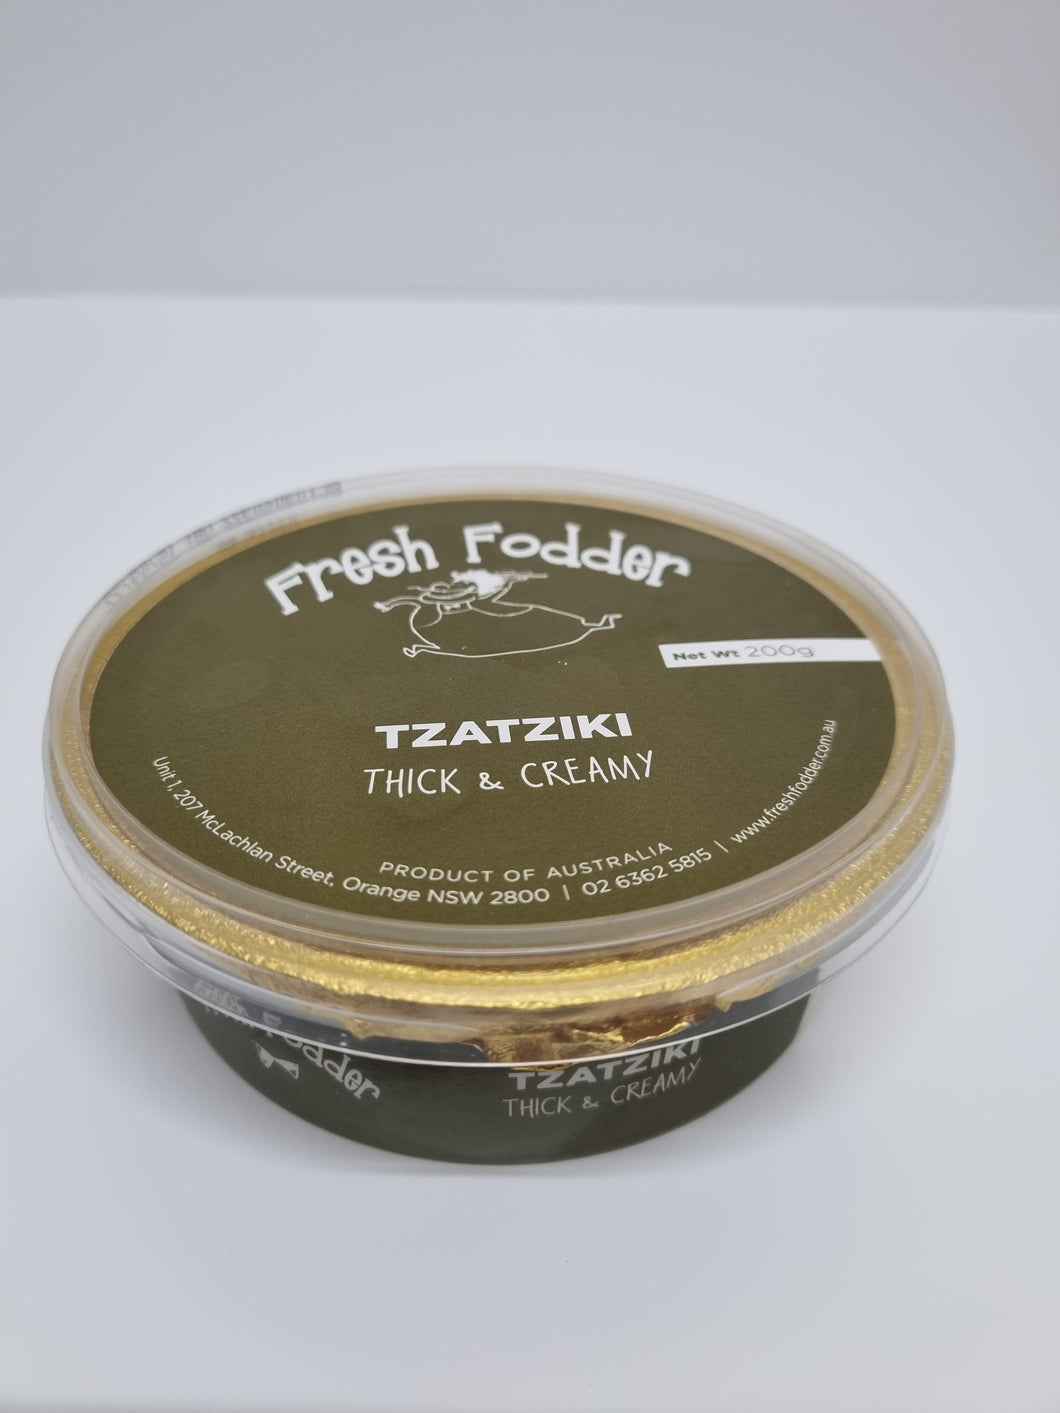 Fresh Fodder- Tzatziki dip